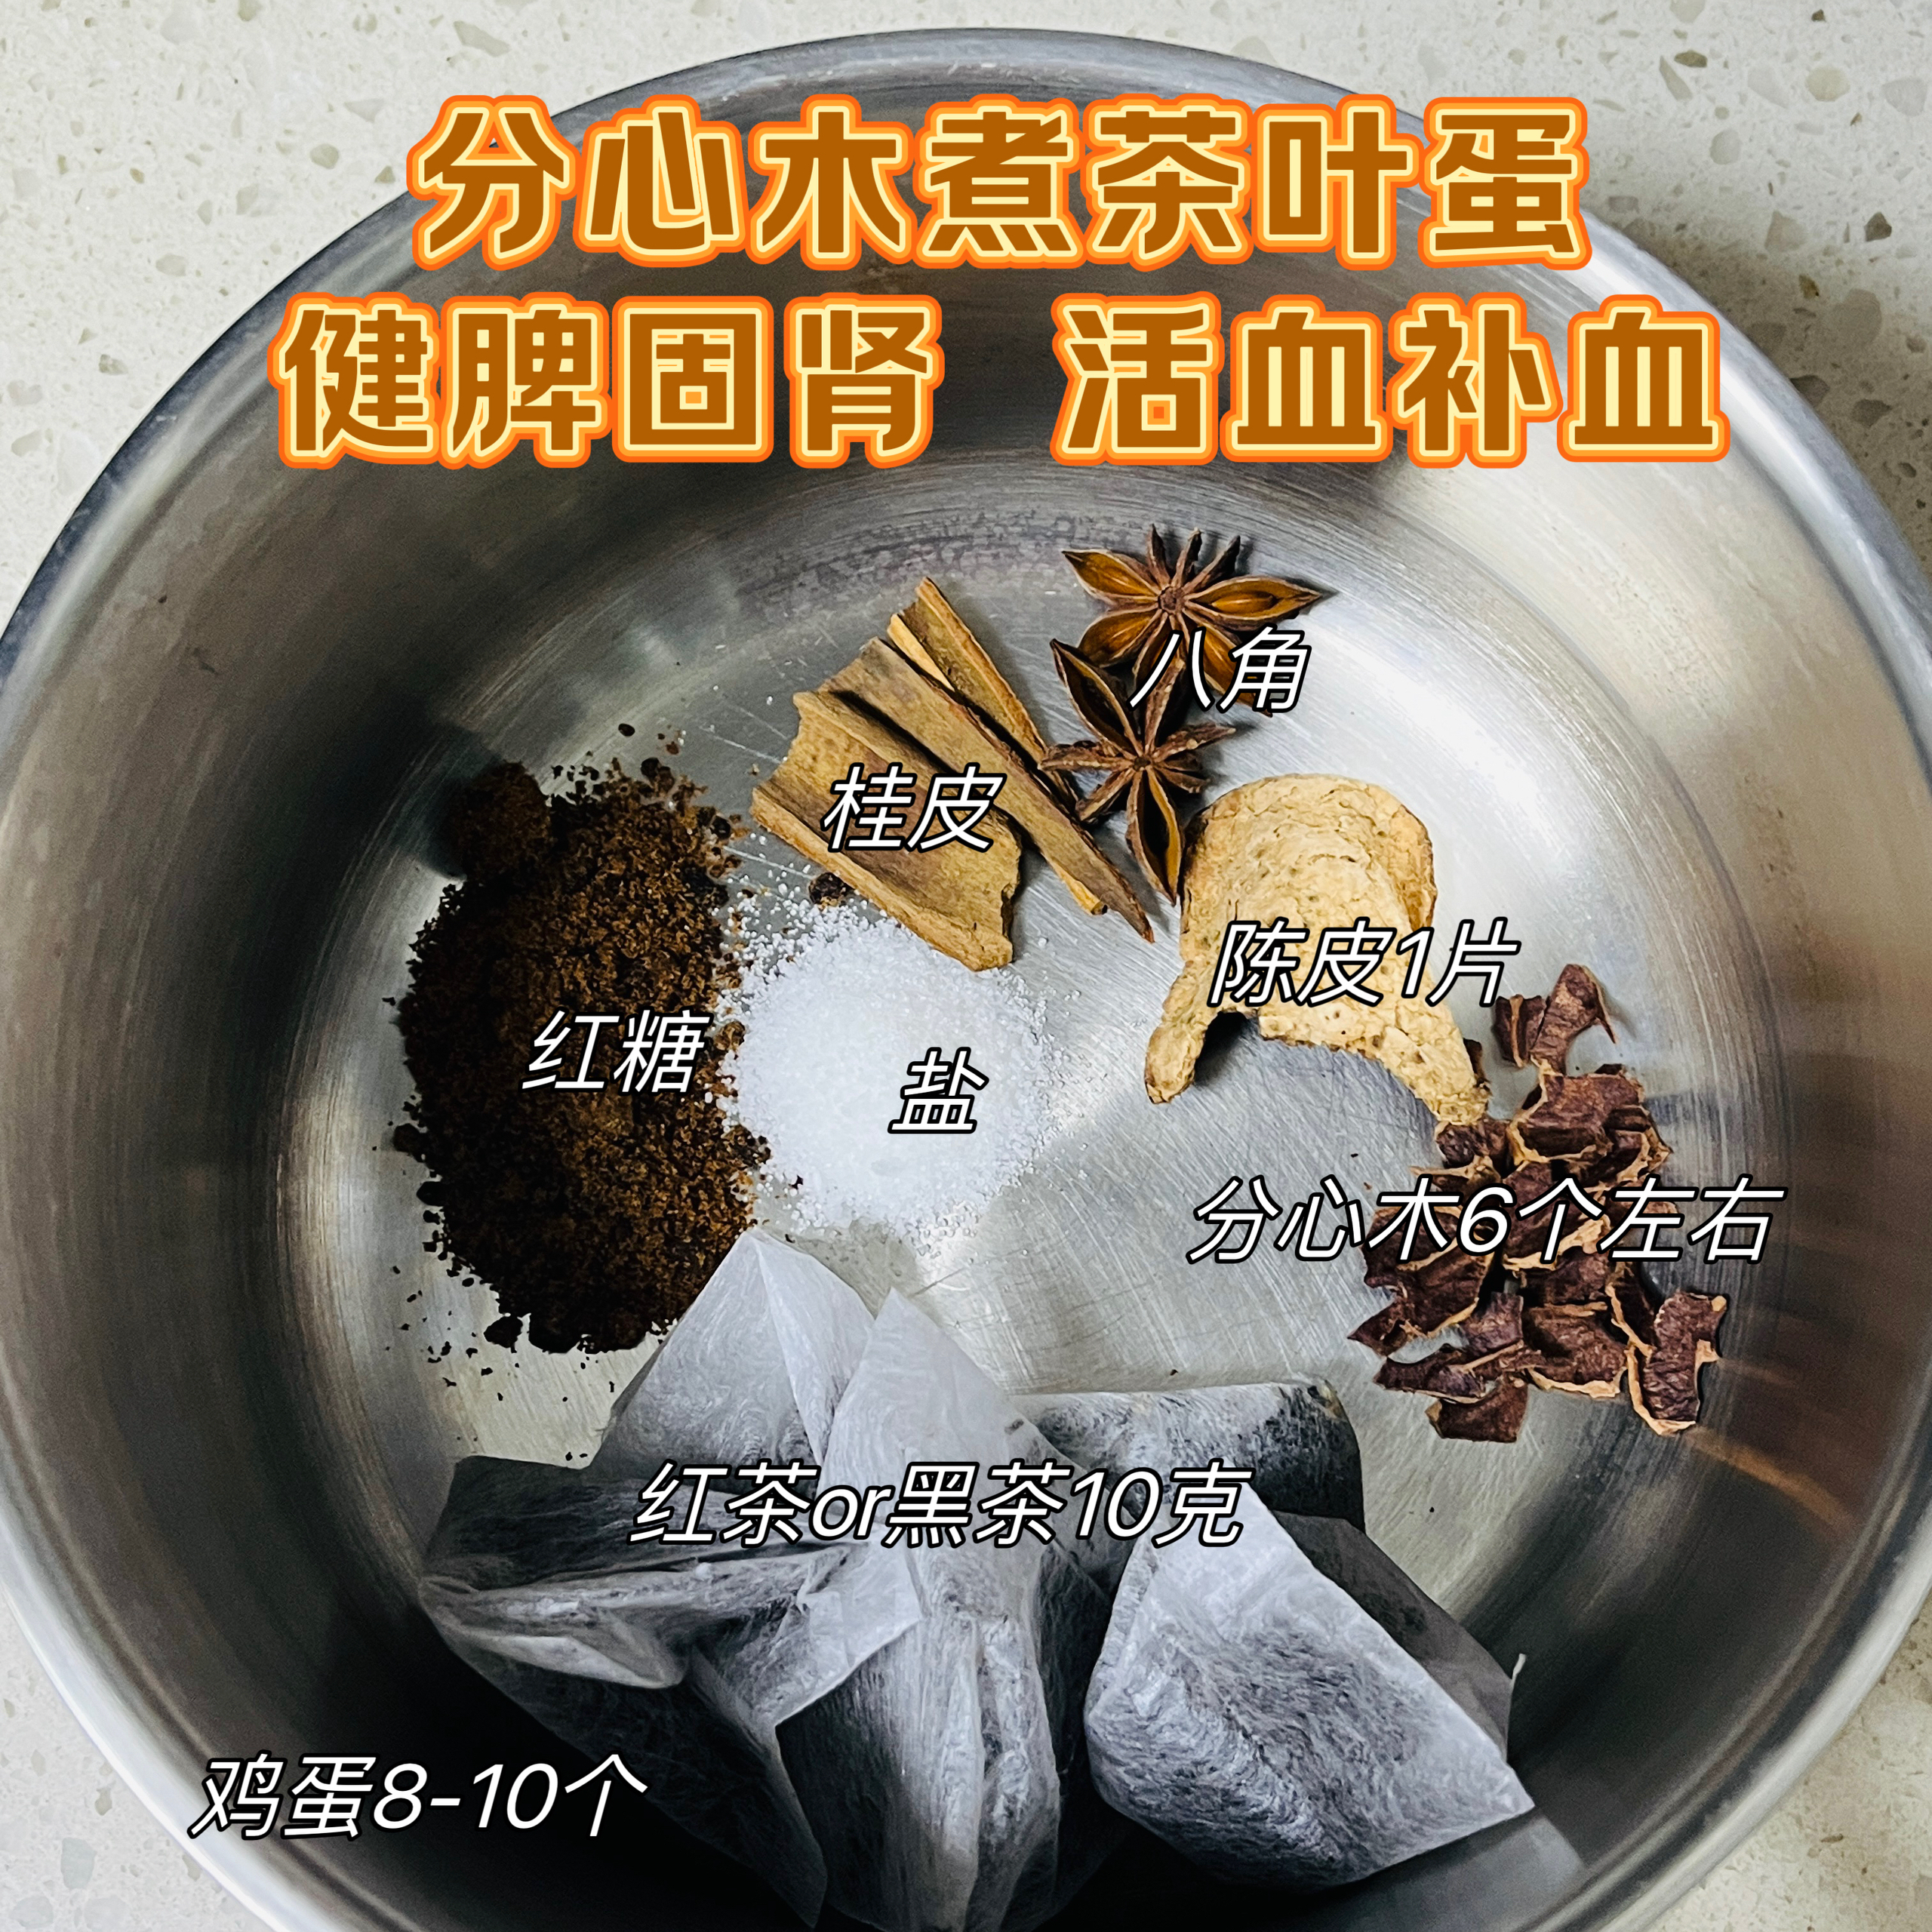 「养生」分心木煮茶叶蛋
健脾固肾 活血补血的做法